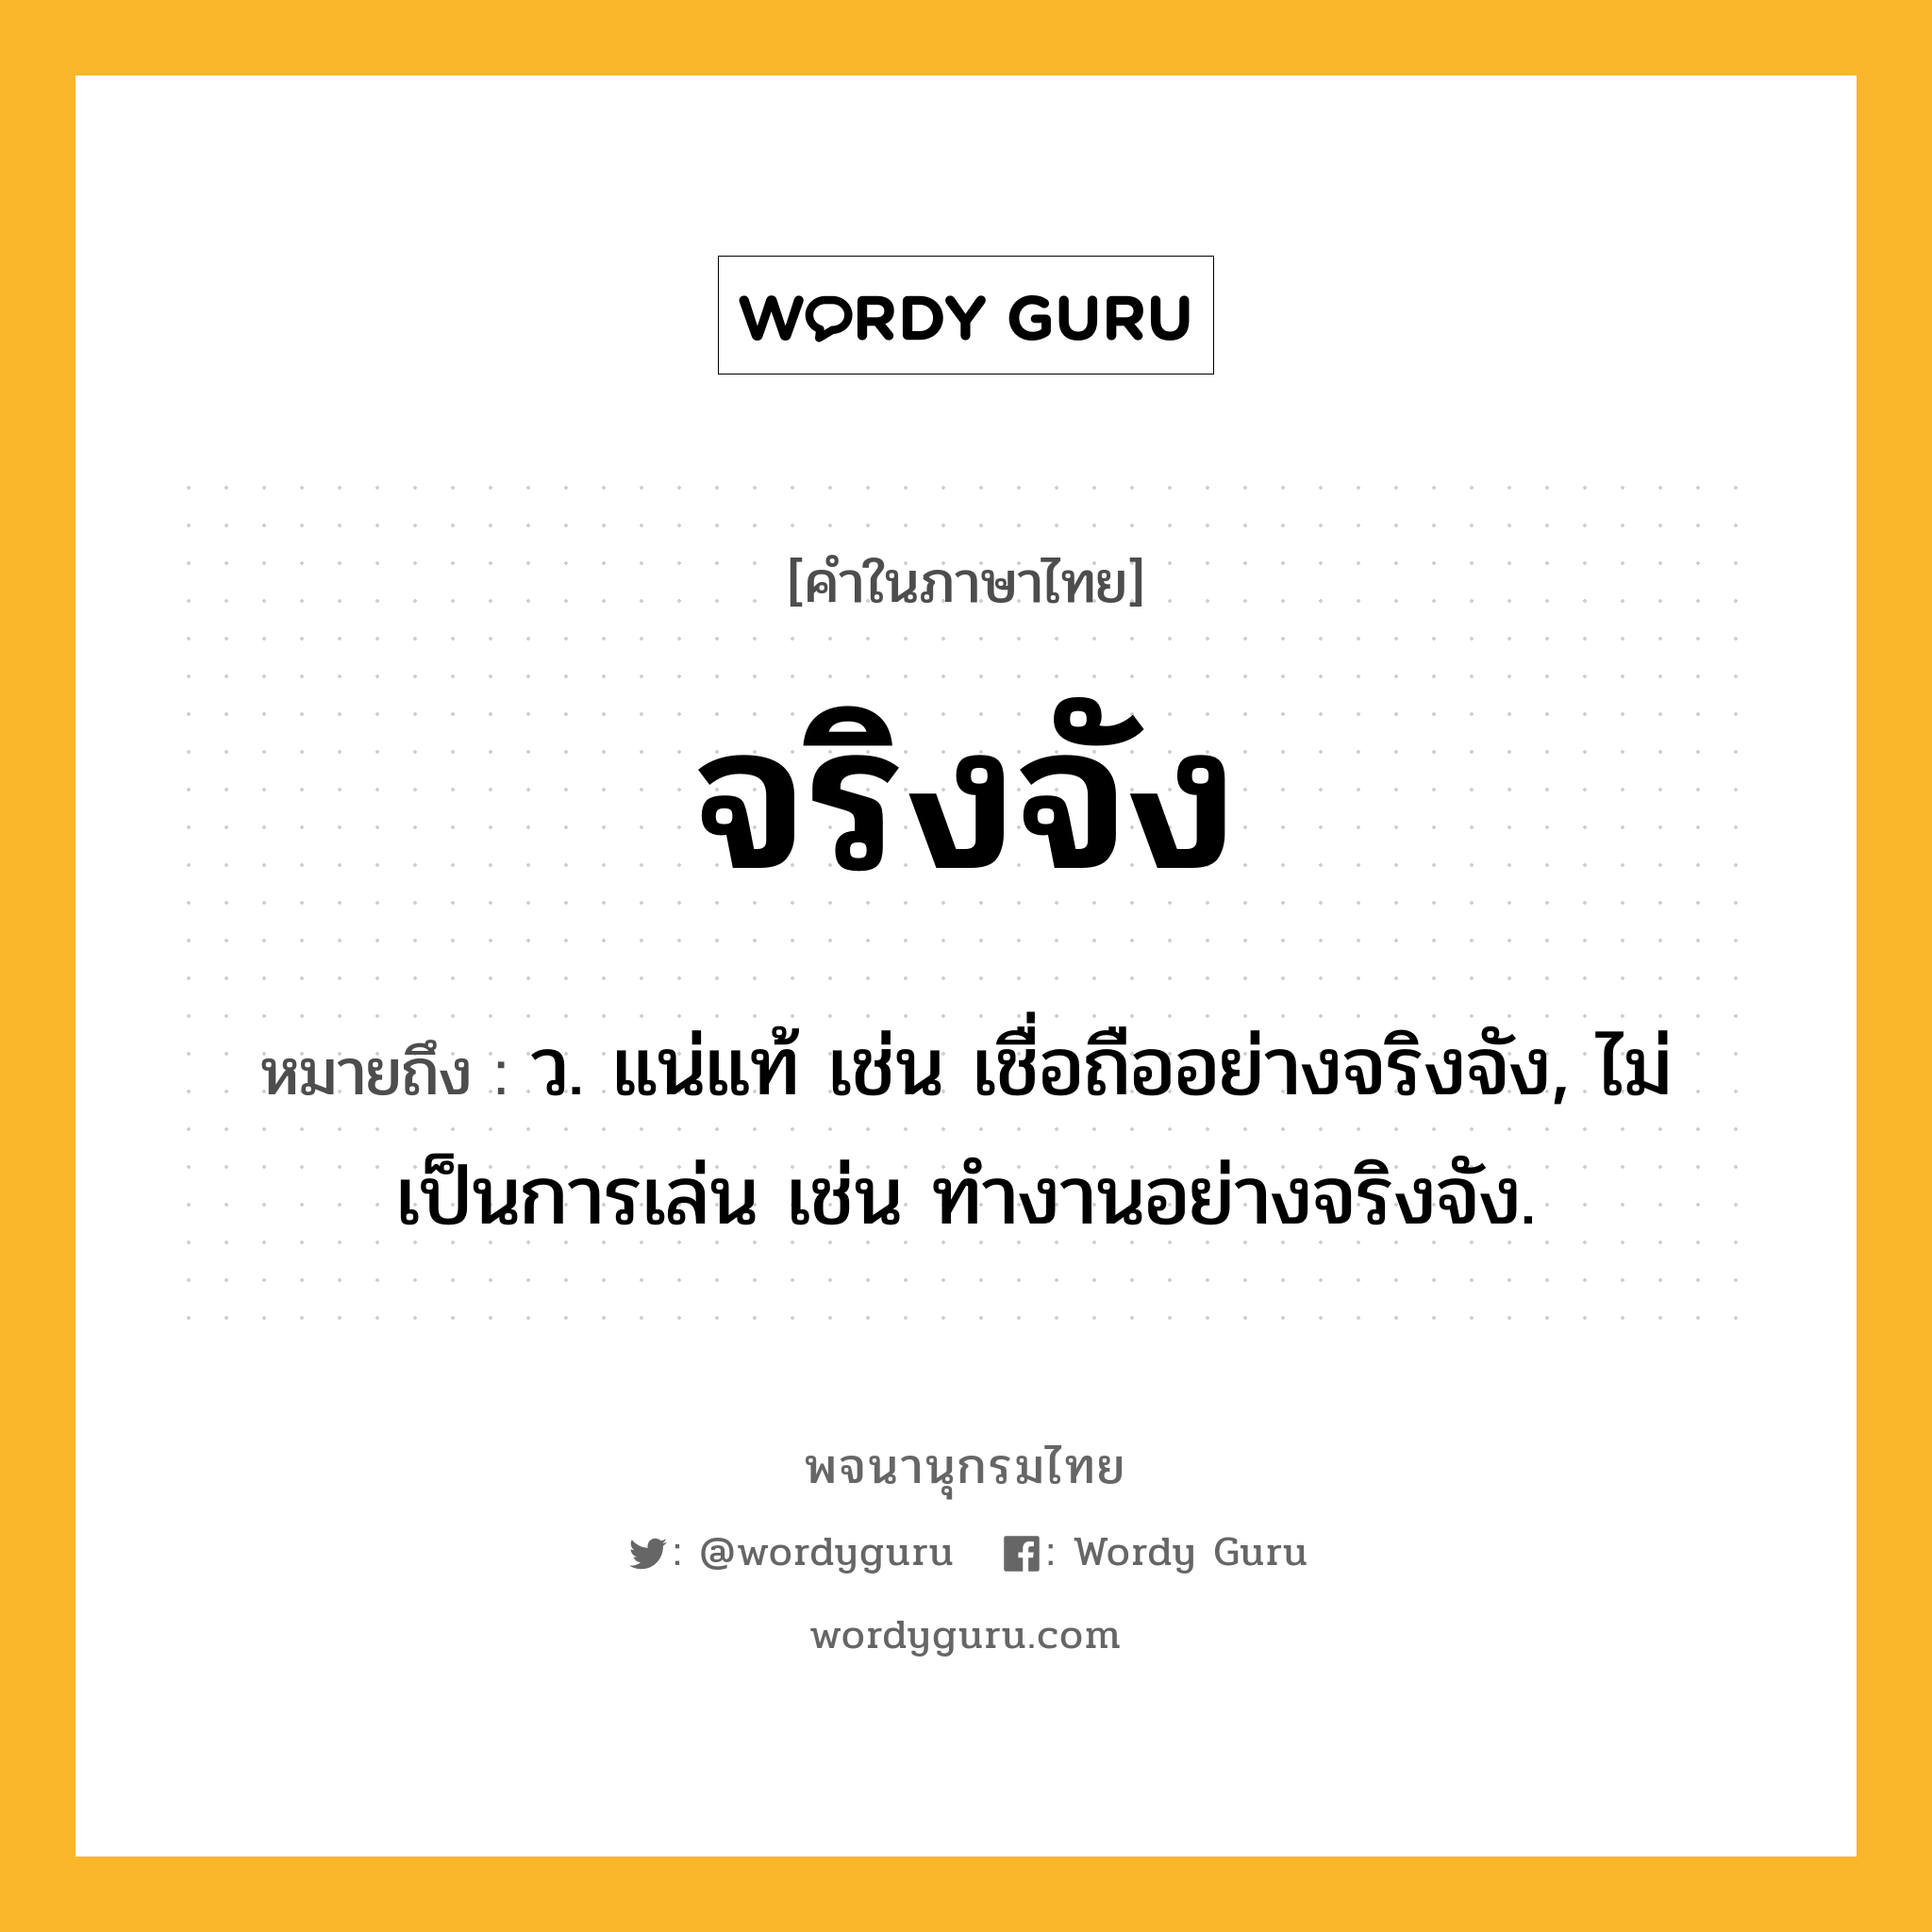 จริงจัง ความหมาย หมายถึงอะไร?, คำในภาษาไทย จริงจัง หมายถึง ว. แน่แท้ เช่น เชื่อถืออย่างจริงจัง, ไม่เป็นการเล่น เช่น ทํางานอย่างจริงจัง.